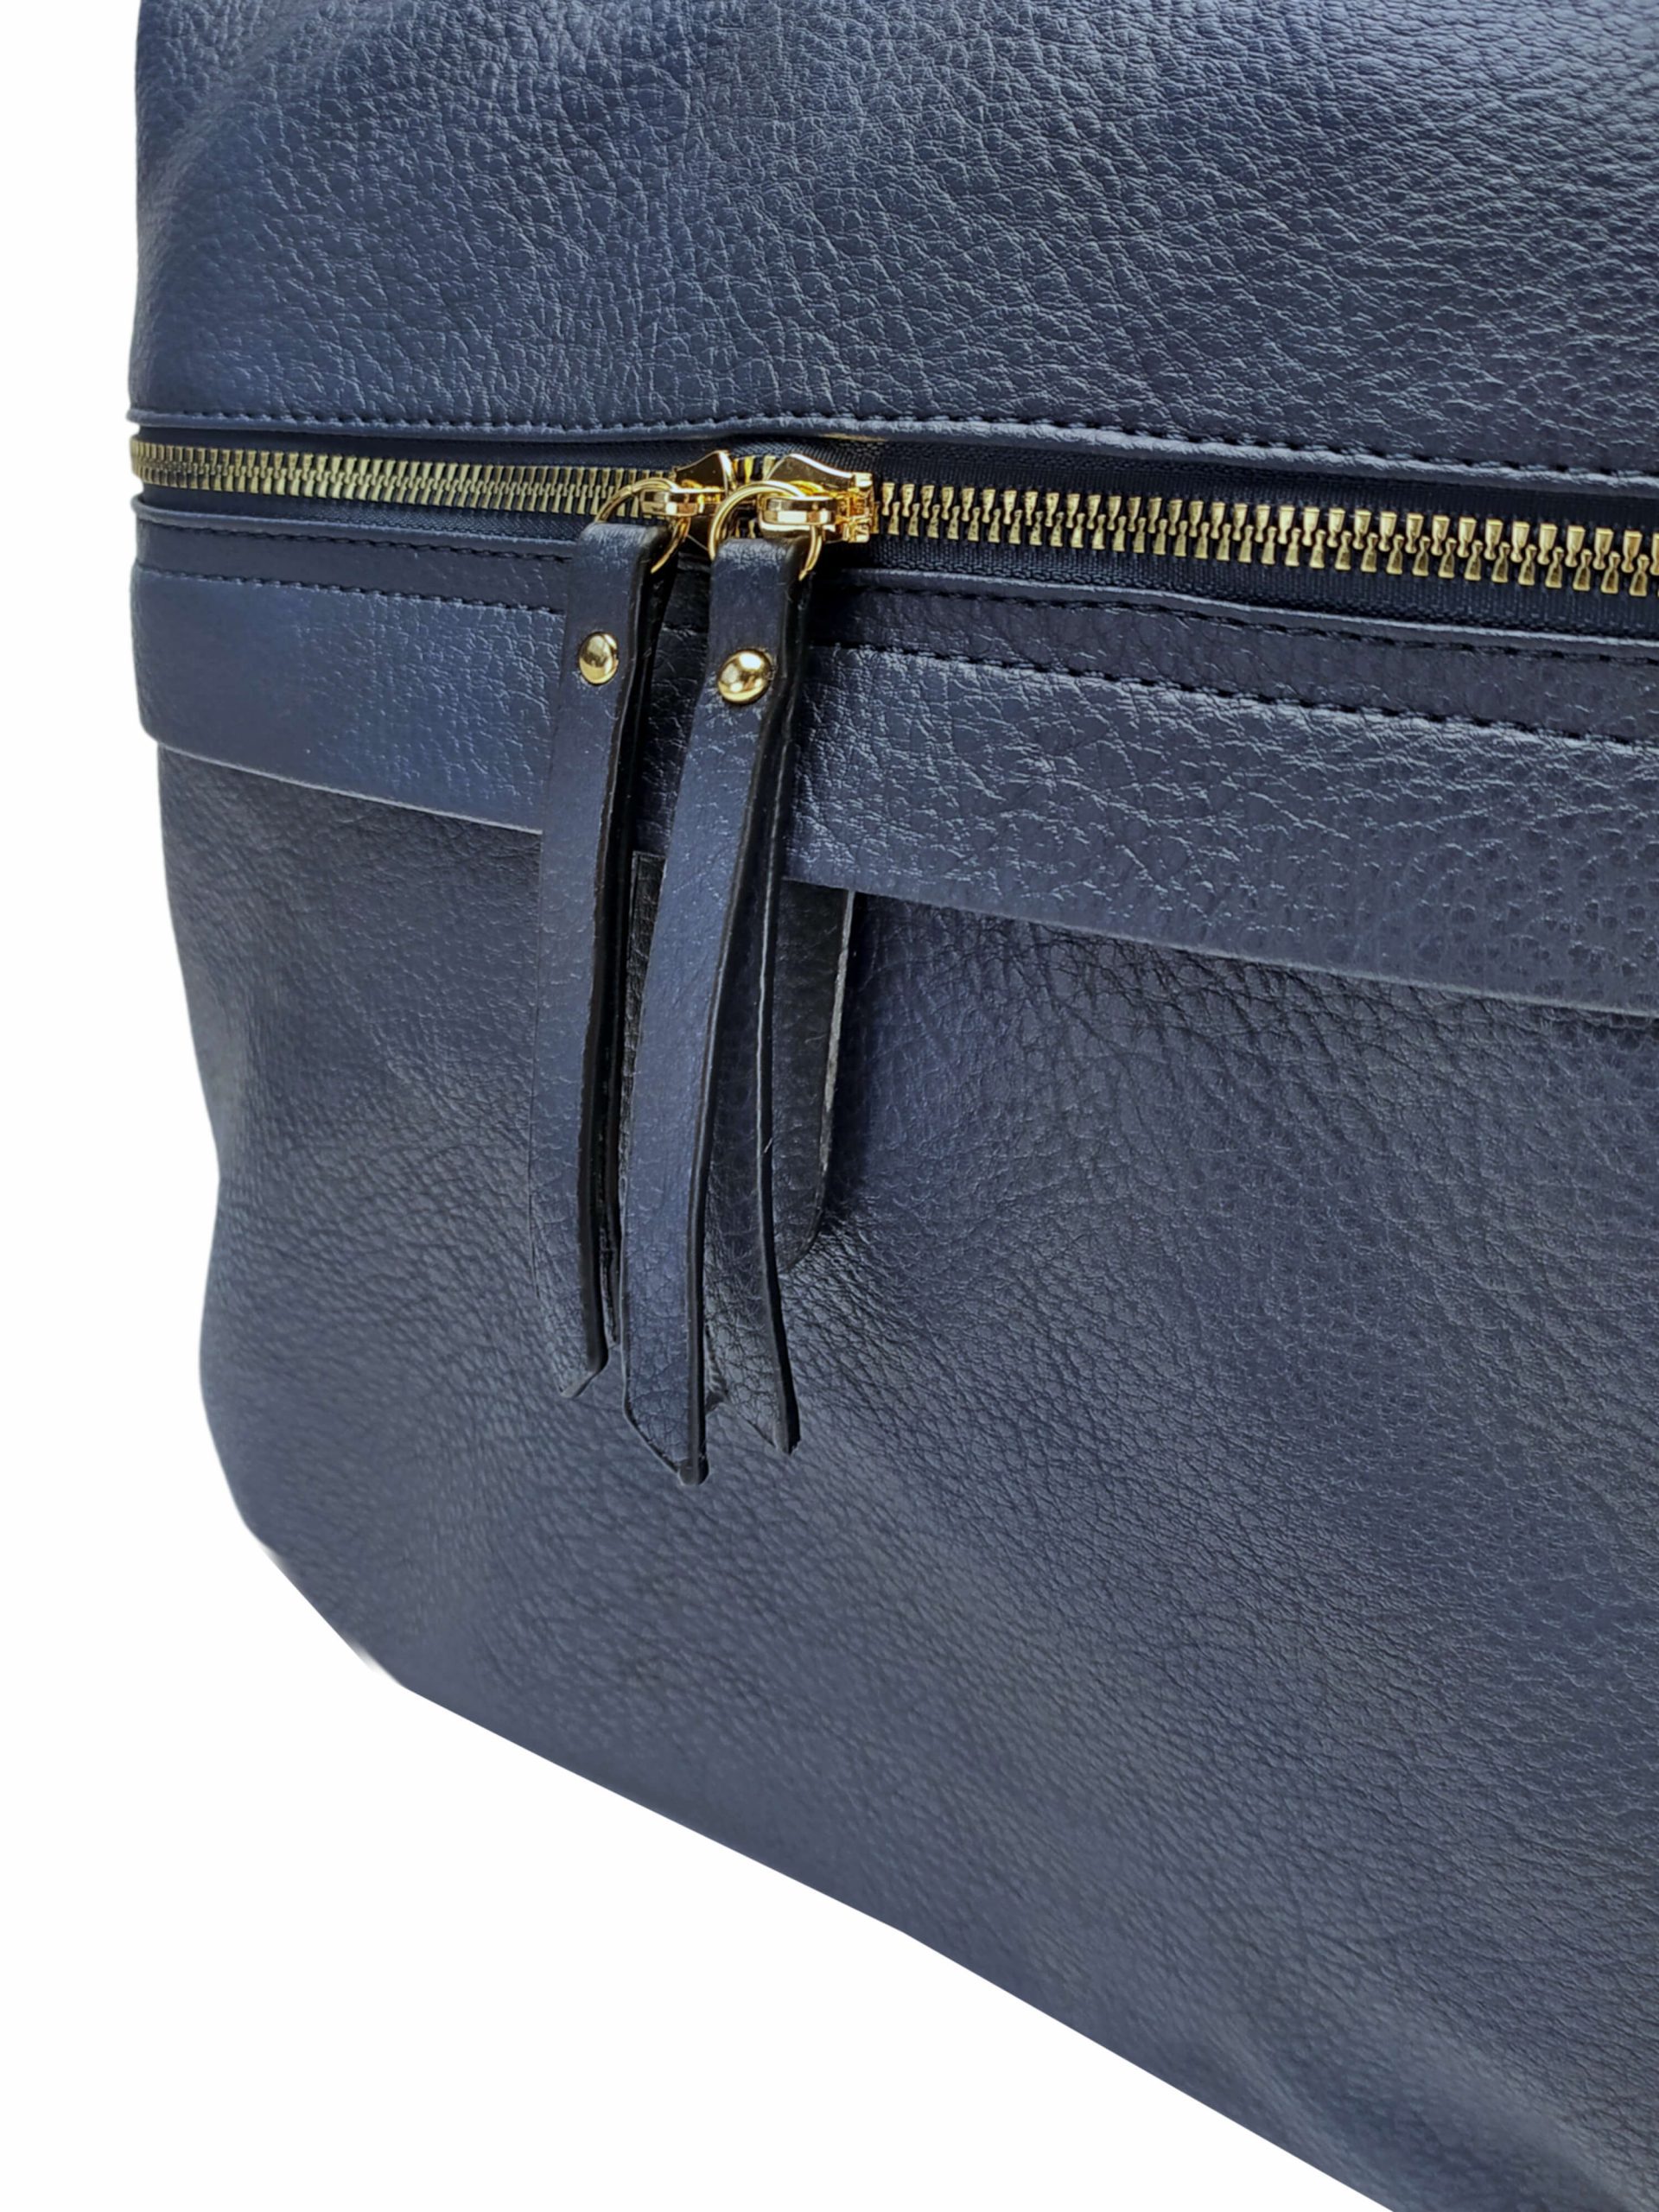 Velký tmavě modrý kabelko-batoh 2v1 s kapsou, Int. Company, H23, detail kabelko-batohu